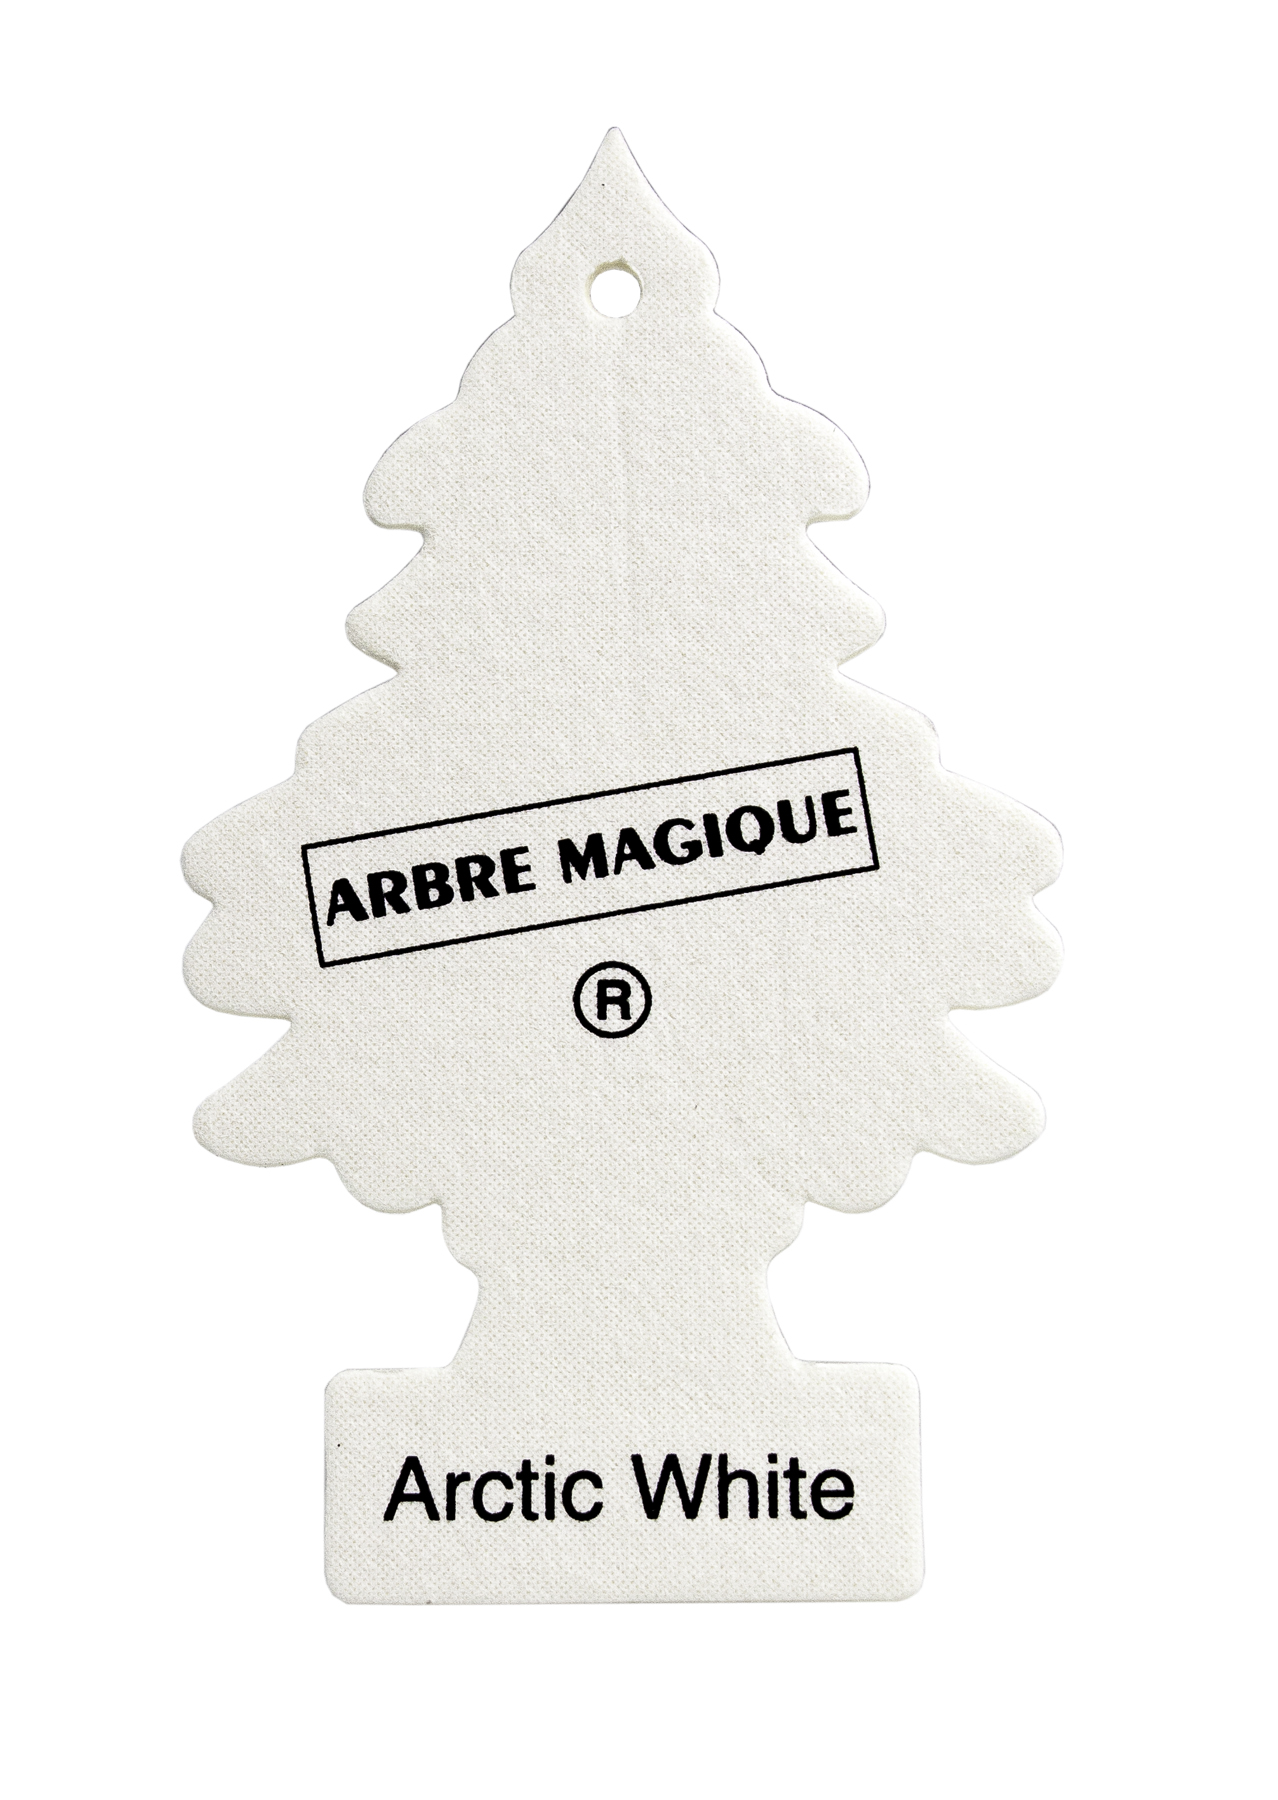 ARBRE MAGIQUE®. Arctic white – Etape Auto